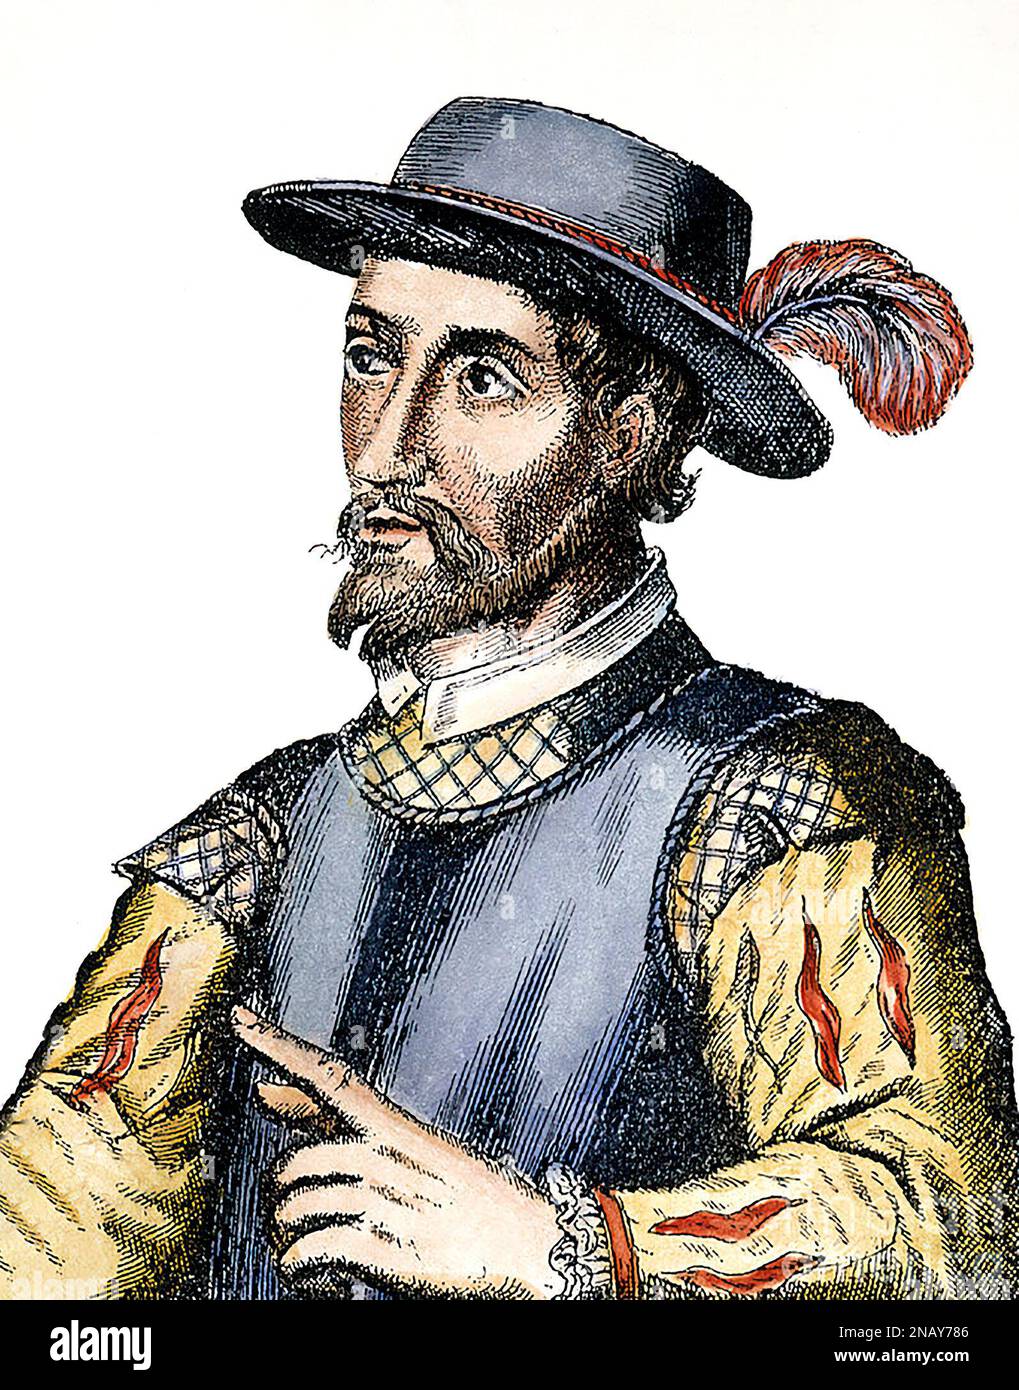 Ponce de Leon. Portrait of the Spanish explorer and conquistador, Juan Ponce de León (1474-1521), engraving, 17th century Stock Photo